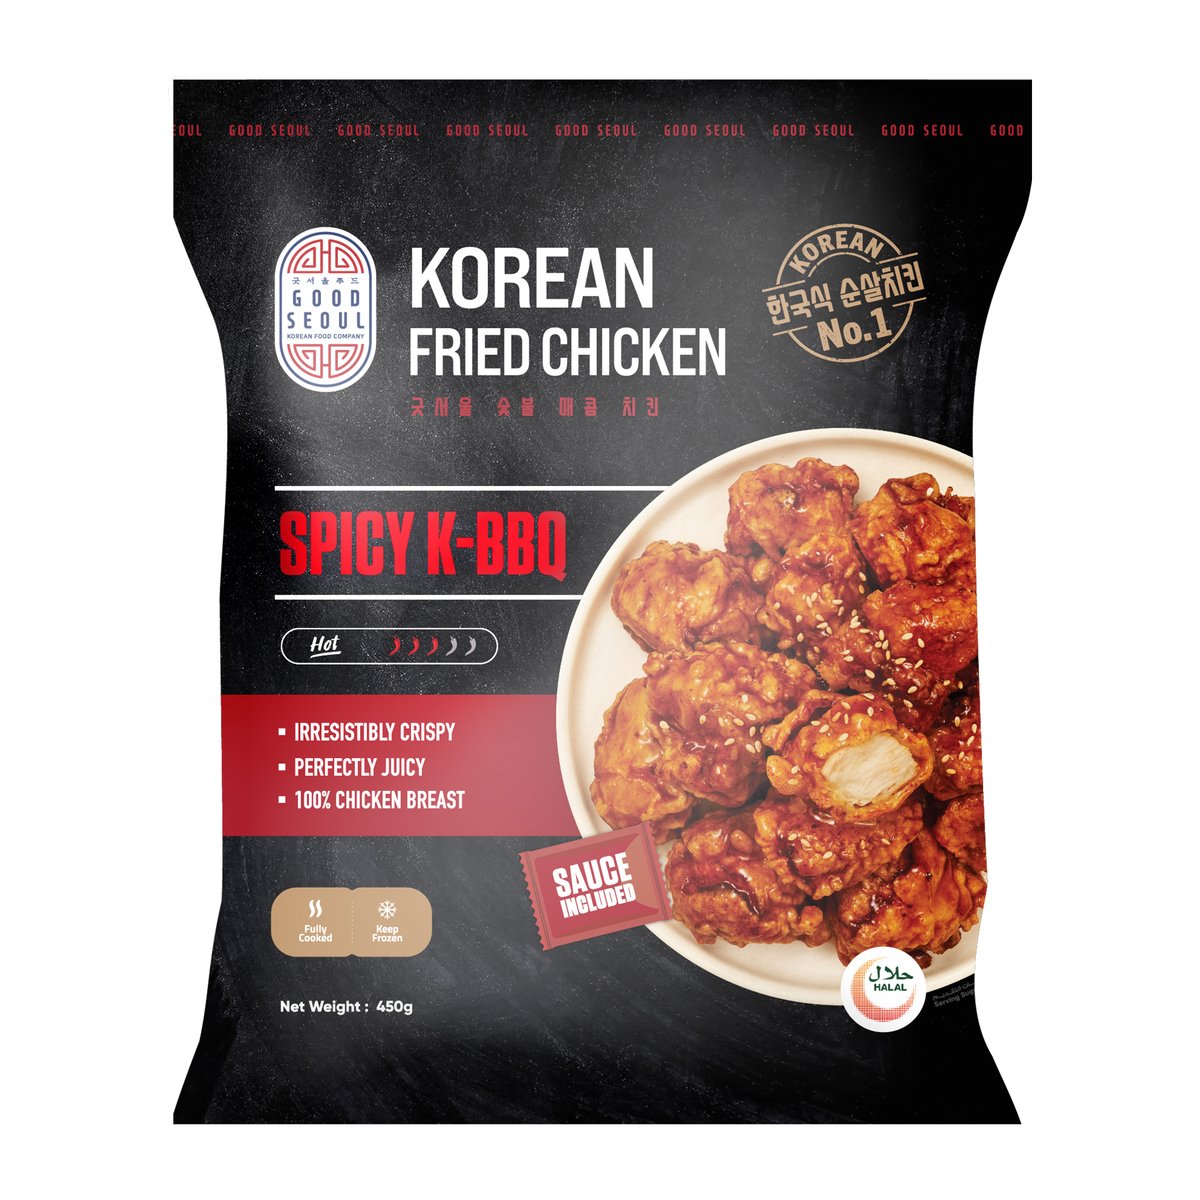 Good Seoul Spicy K-BBQ Korean Fried Chicken 450 g